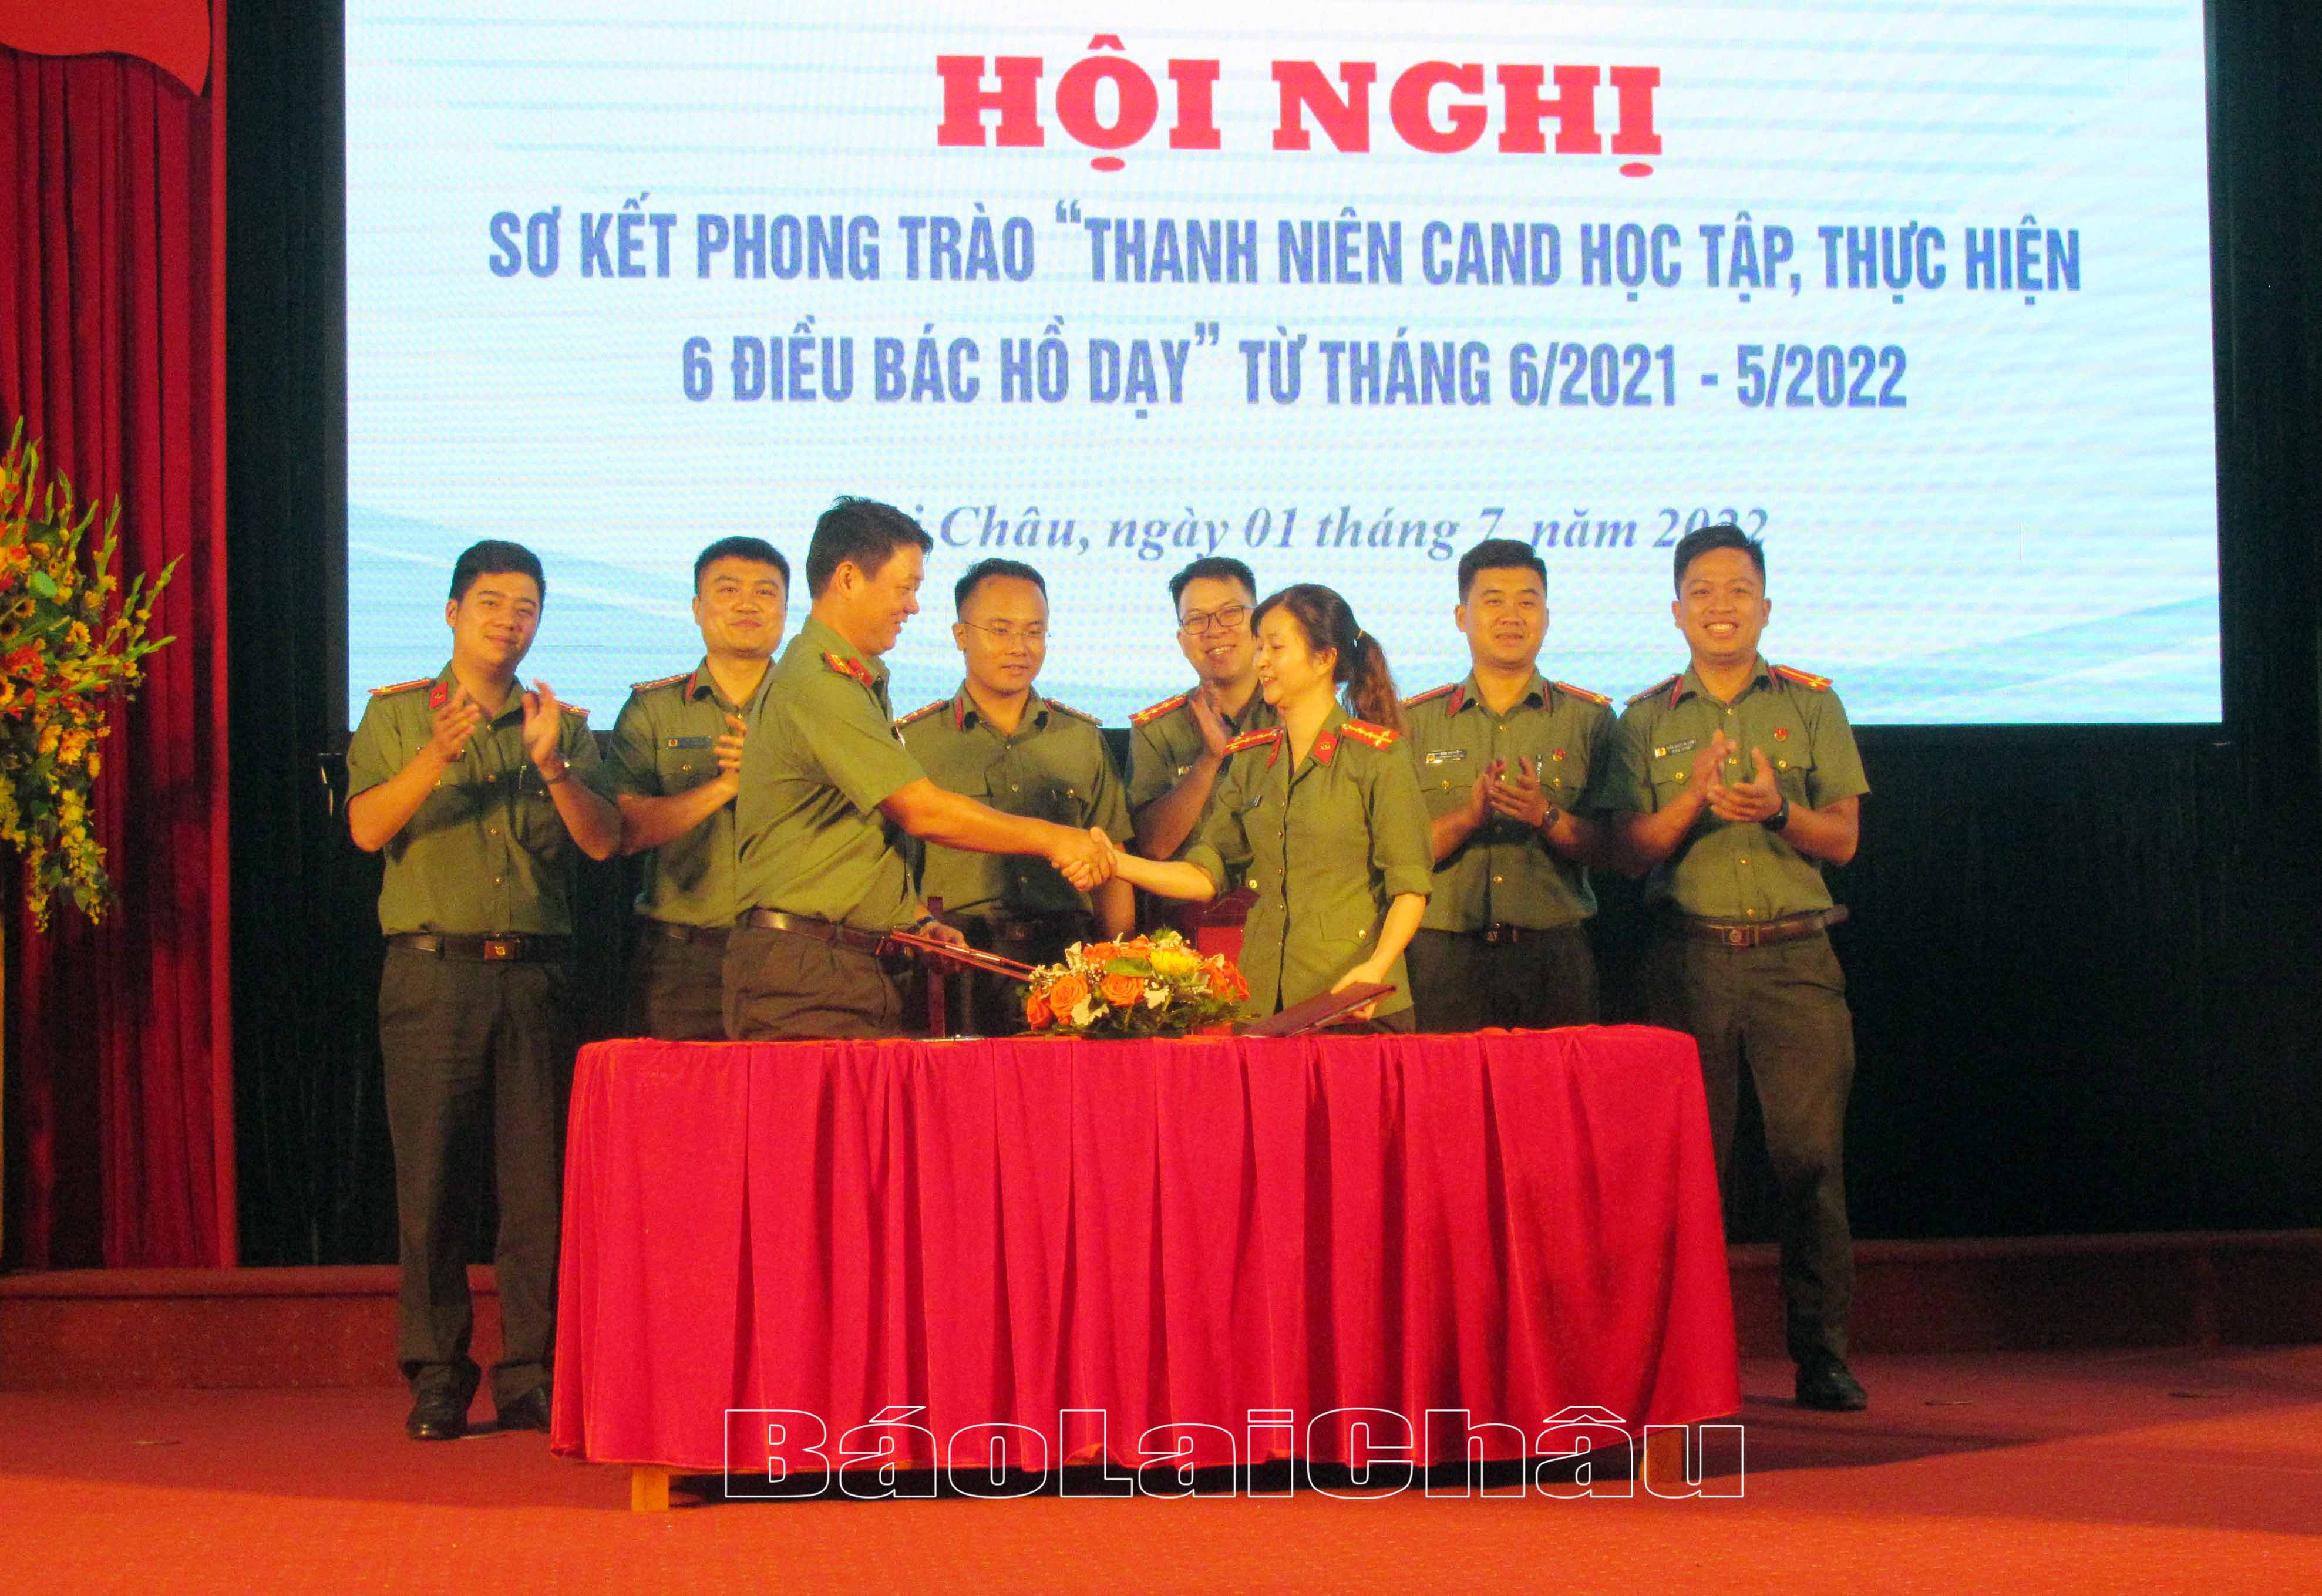 Đại diện Đoàn thanh niên công an tỉnh Lai Châu, Cụm trưởng Cụm thi đua số 2 (năm 2021, 2022) đã bàn giao đơn vị Cụm trưởng Cụm thi đua số 2 (năm 2022, 2023) cho Đoàn thanh niên Công an tỉnh Điện Biên.